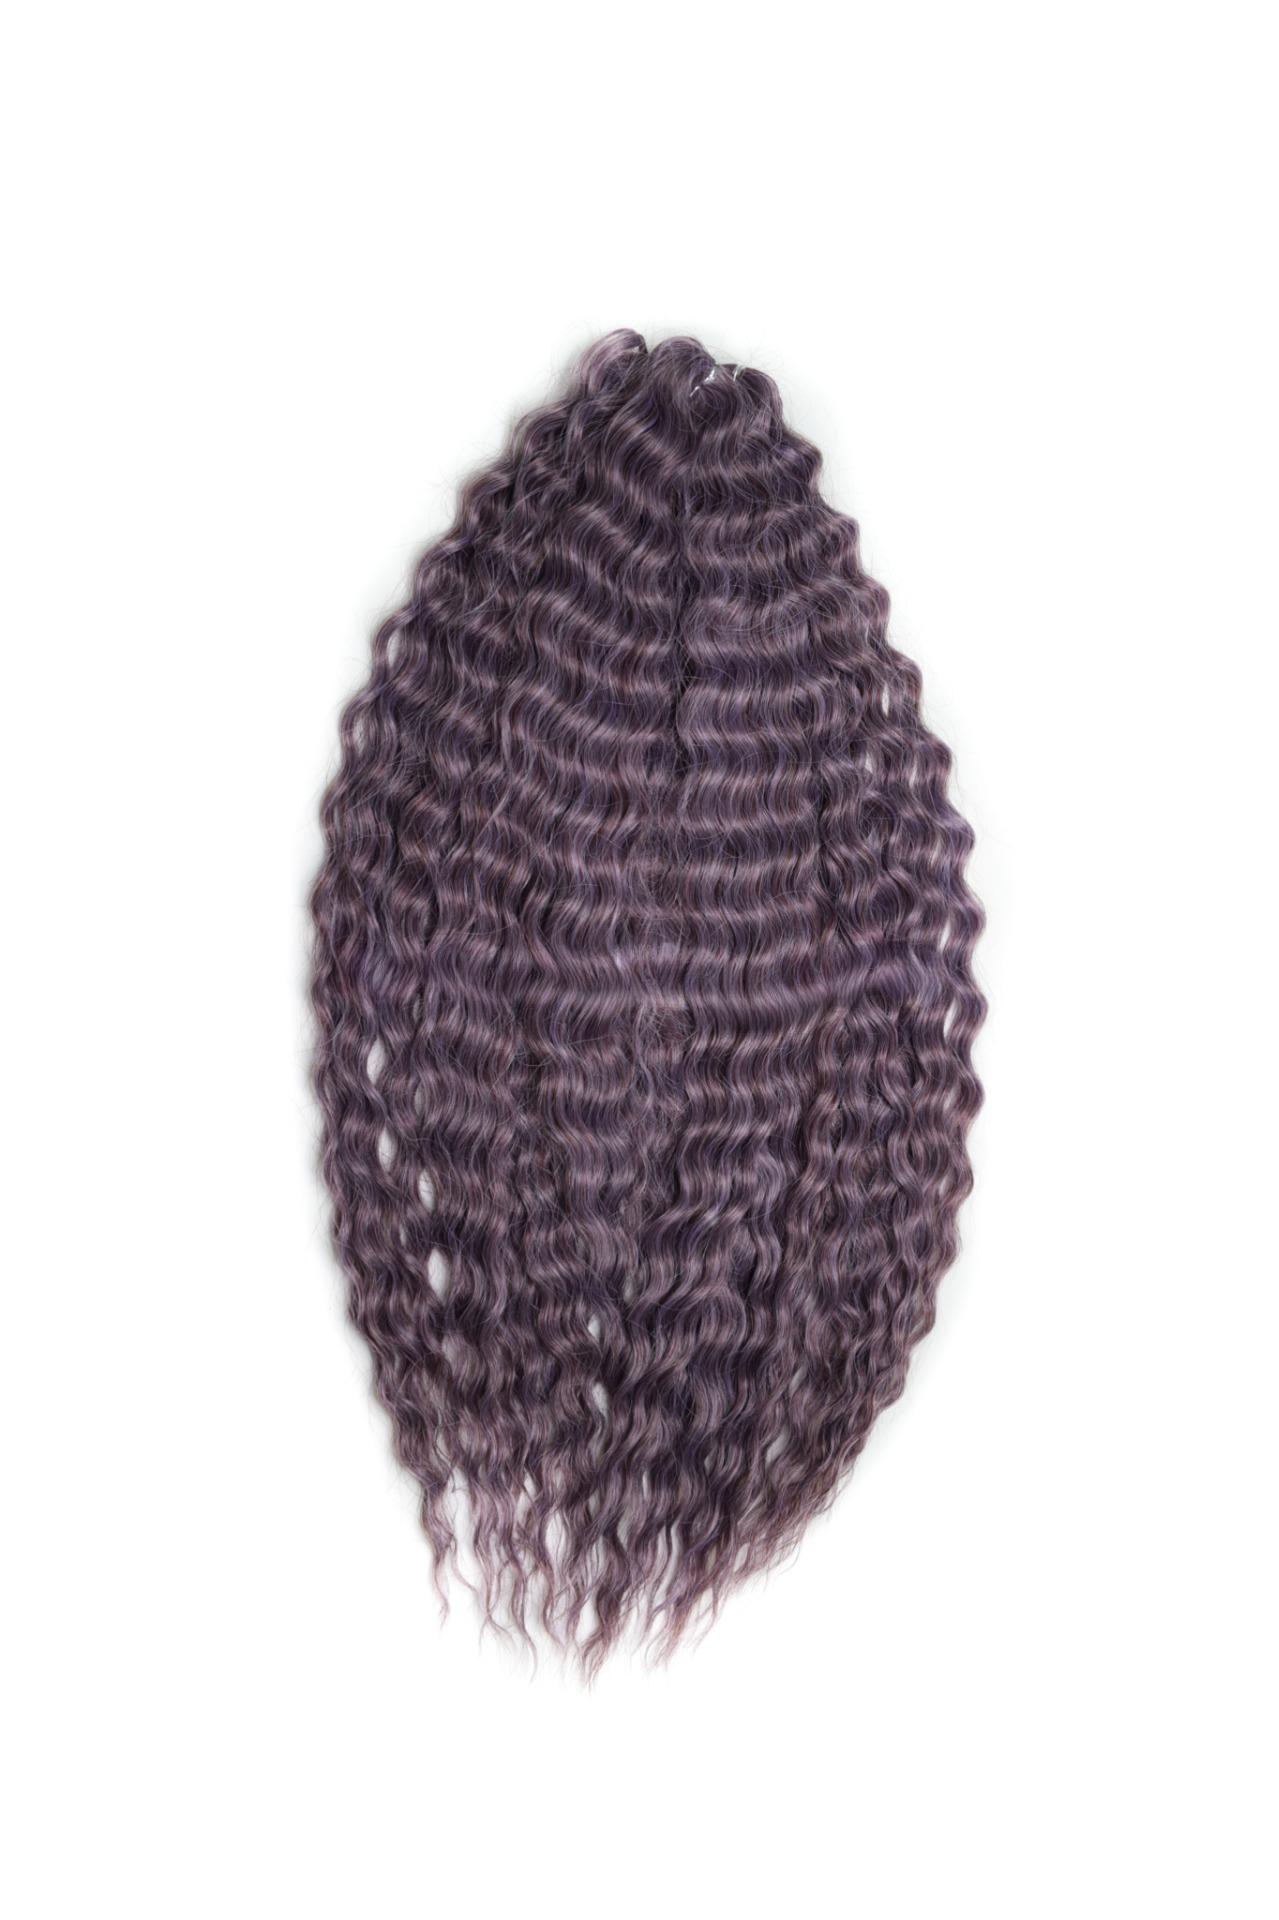 Афрокудри для плетения волос Ariel Ариэль цвет PURPLE GREY длина 60см вес 300г